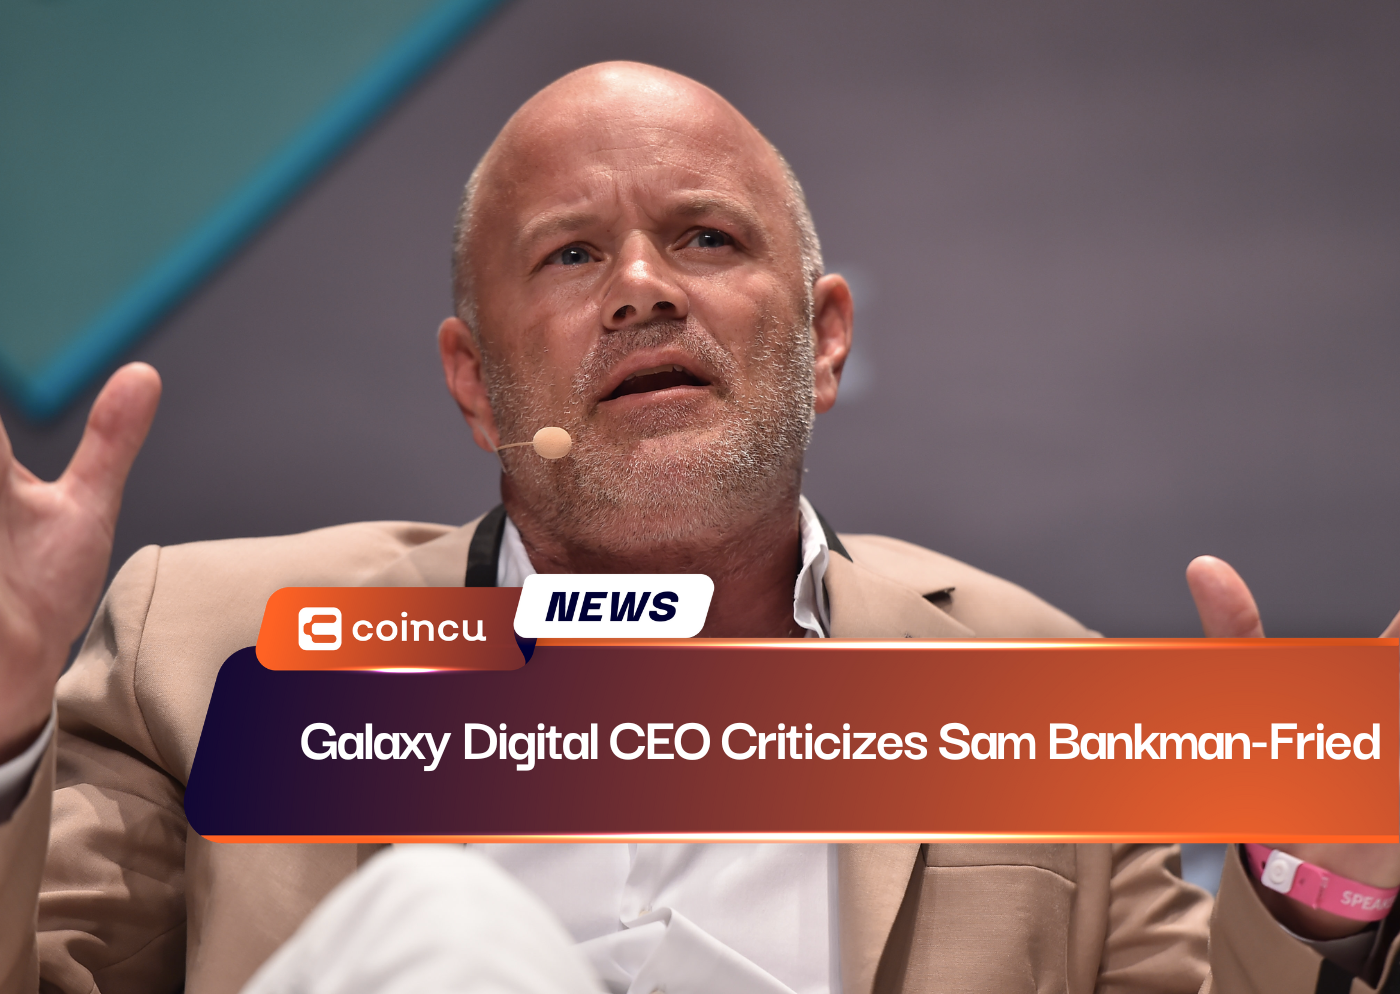 Galaxy Digital CEO Criticizes Sam Bankman-Fried